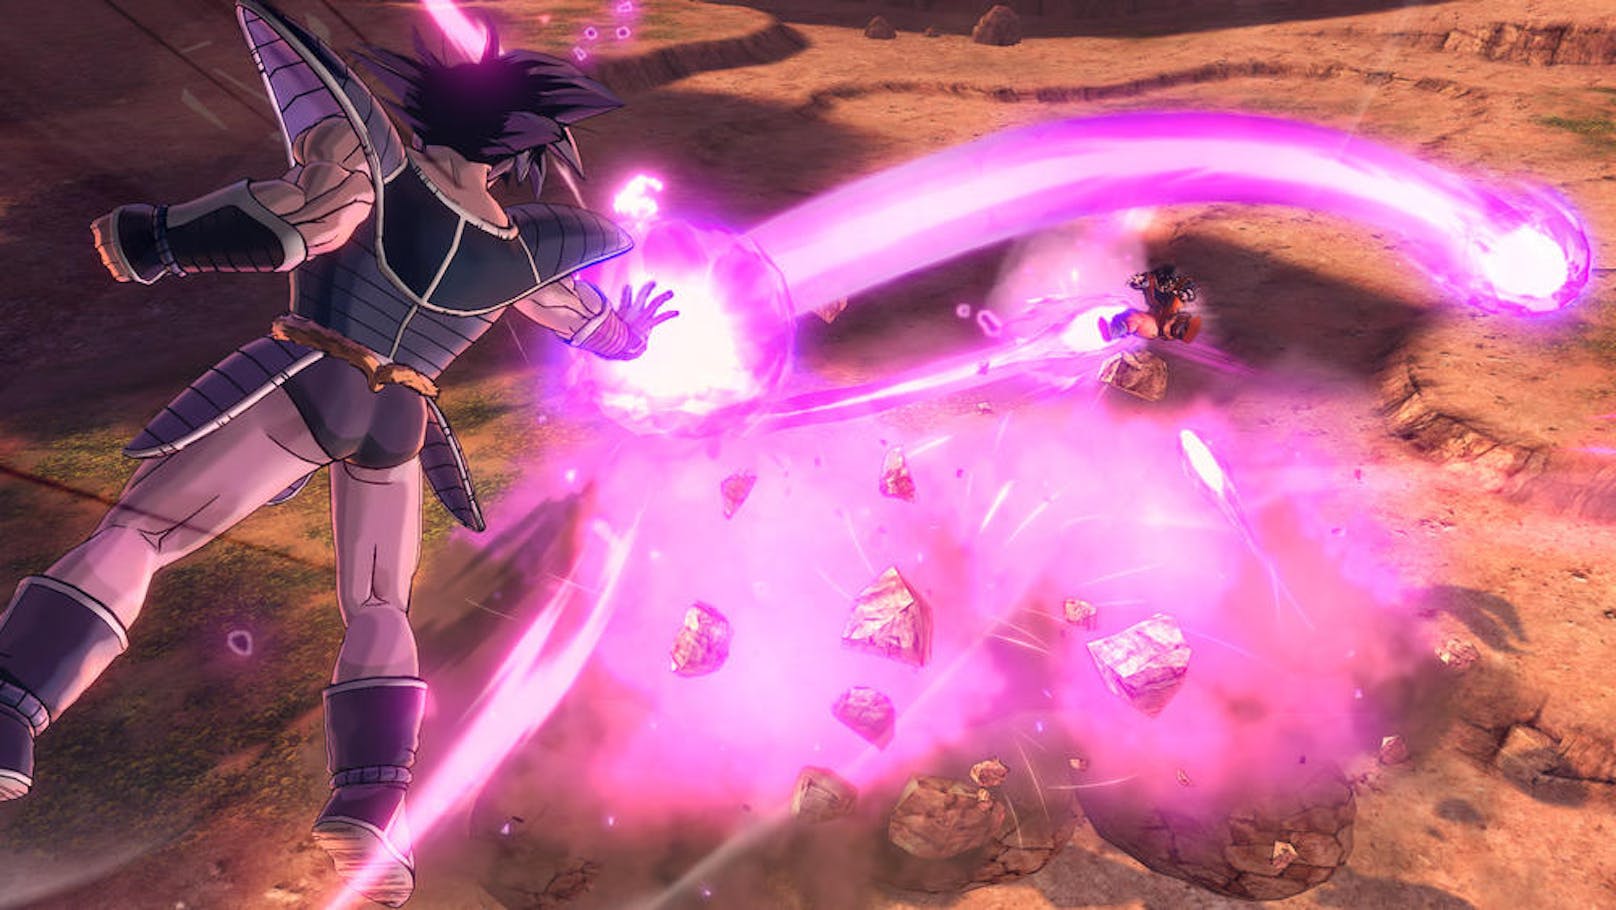 Bei den Kämpfen selbst gibt es nicht viel Innovation zum ersten Teil, wieder stehen die bekannten Kämpfe wie Son Goku gegen Nappa plus Vegeta und Co. auf dem Spielplan.